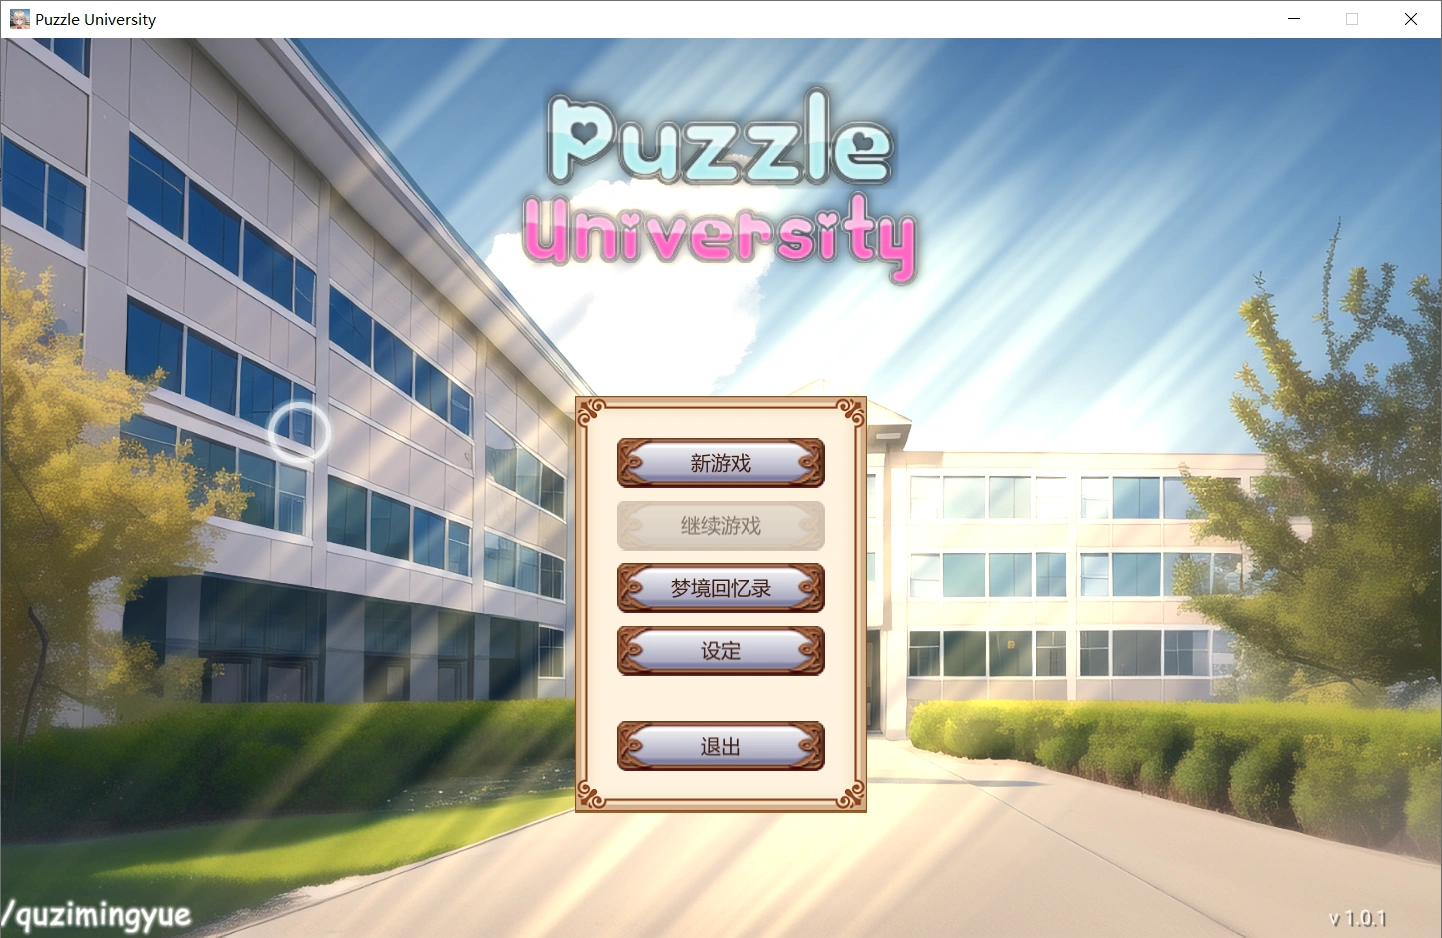 【互动SLG/中文】梦之拼图大学Puzzle University v1.0.1 官方中文步兵版【PC/2.1G】-小皮ACG-二次元资源分享